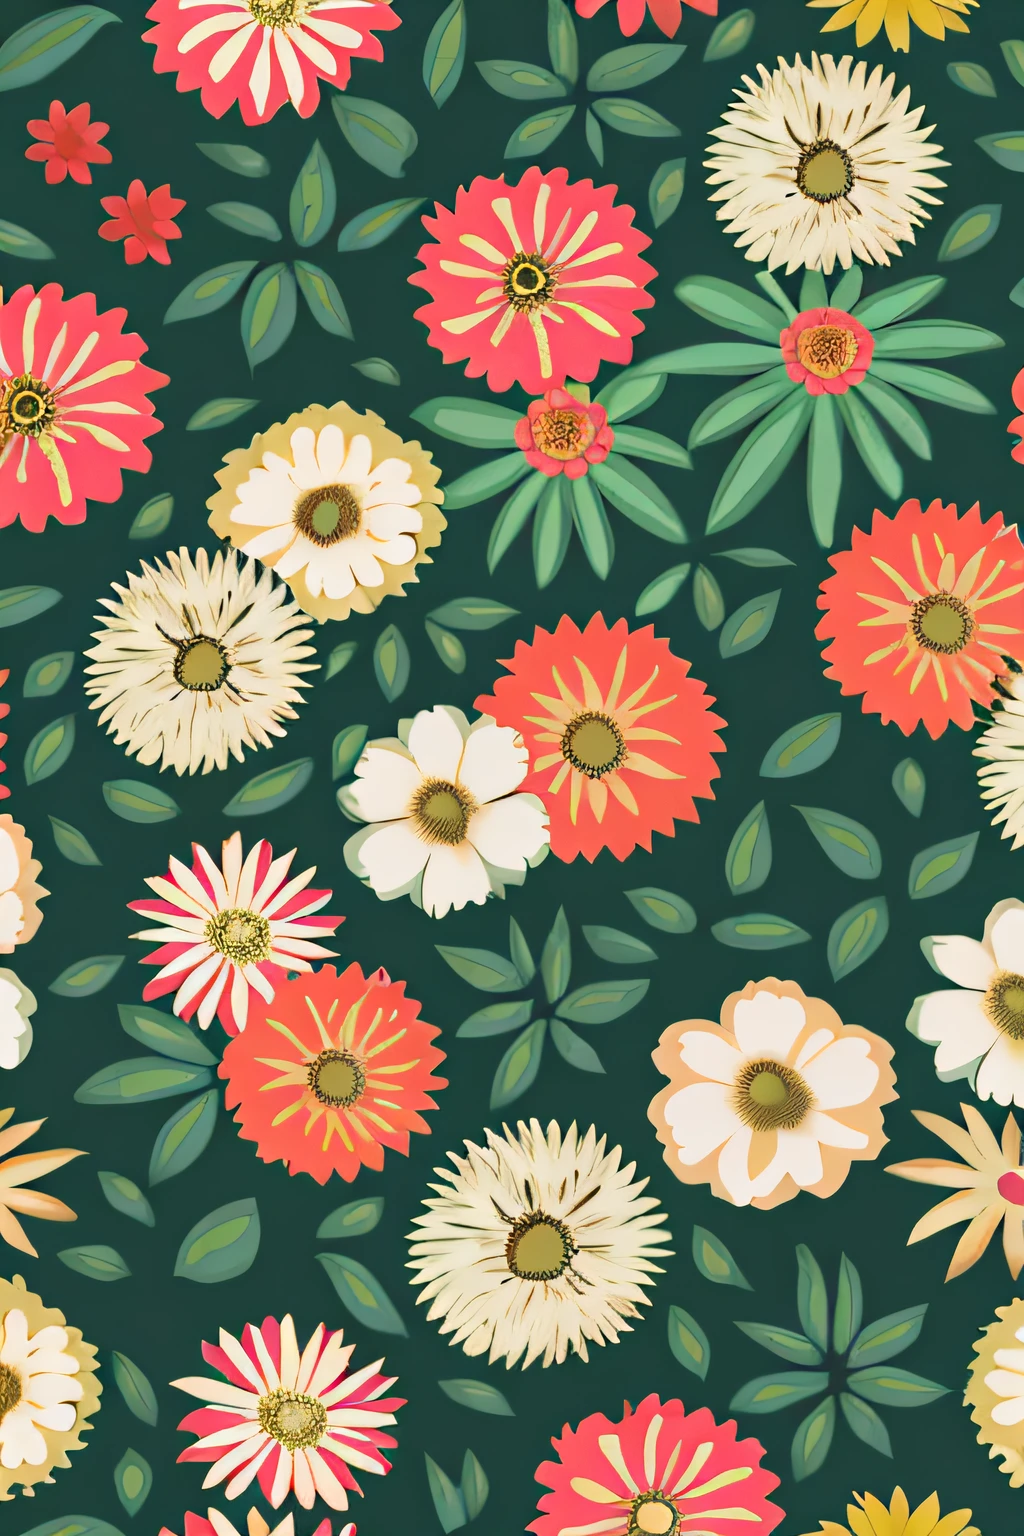 花柄の壁紙, 壁紙デザイン, 花柄, 植物のパターン, 茶色の花, 植物学的な背景, シームレスなパターンデザイン, 花柄, 繊細な模様, 庭の花柄, 茶色の花がいっぱいの背景, 複雑なパターン, 自由奔放に生きる花のつる, 植物, 心地よい美しさのためにデザインされた!, デジタルアート - W 700, 壁紙パターン，Tシャツデザイン，rzminjourney，ベクトルアート，デザインループ